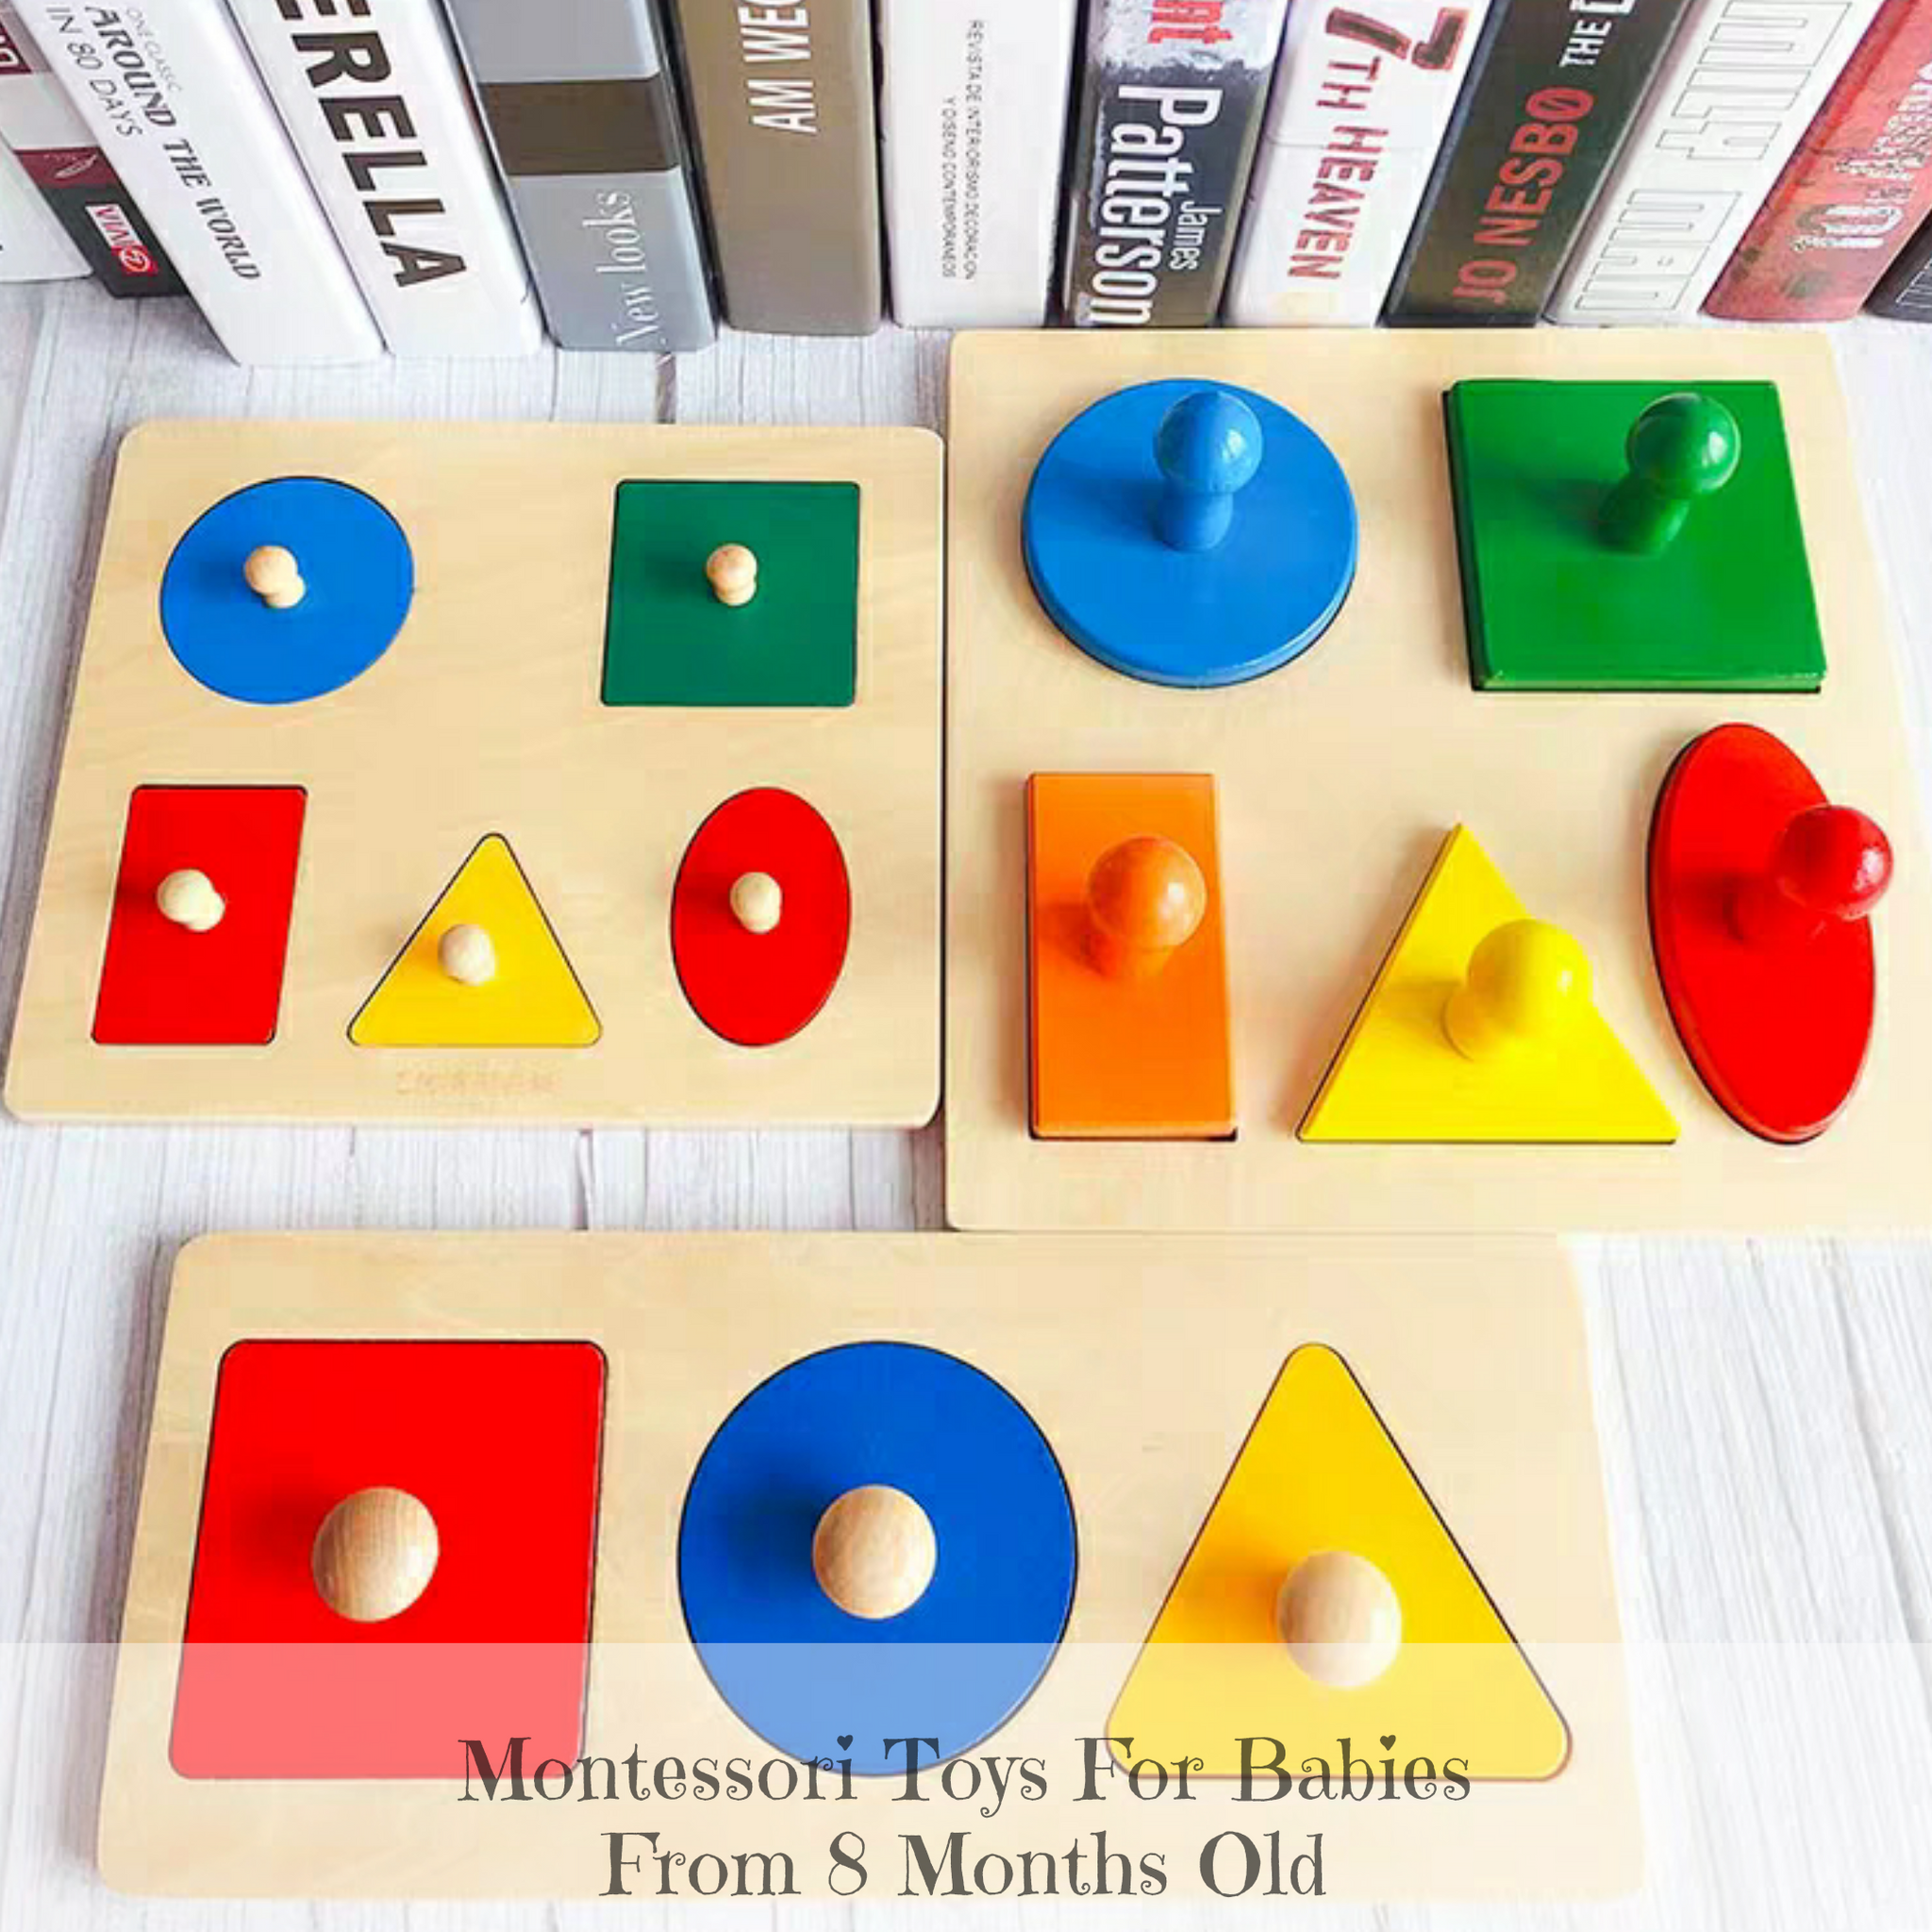 5 Shape Puzzle Toddler Montessori